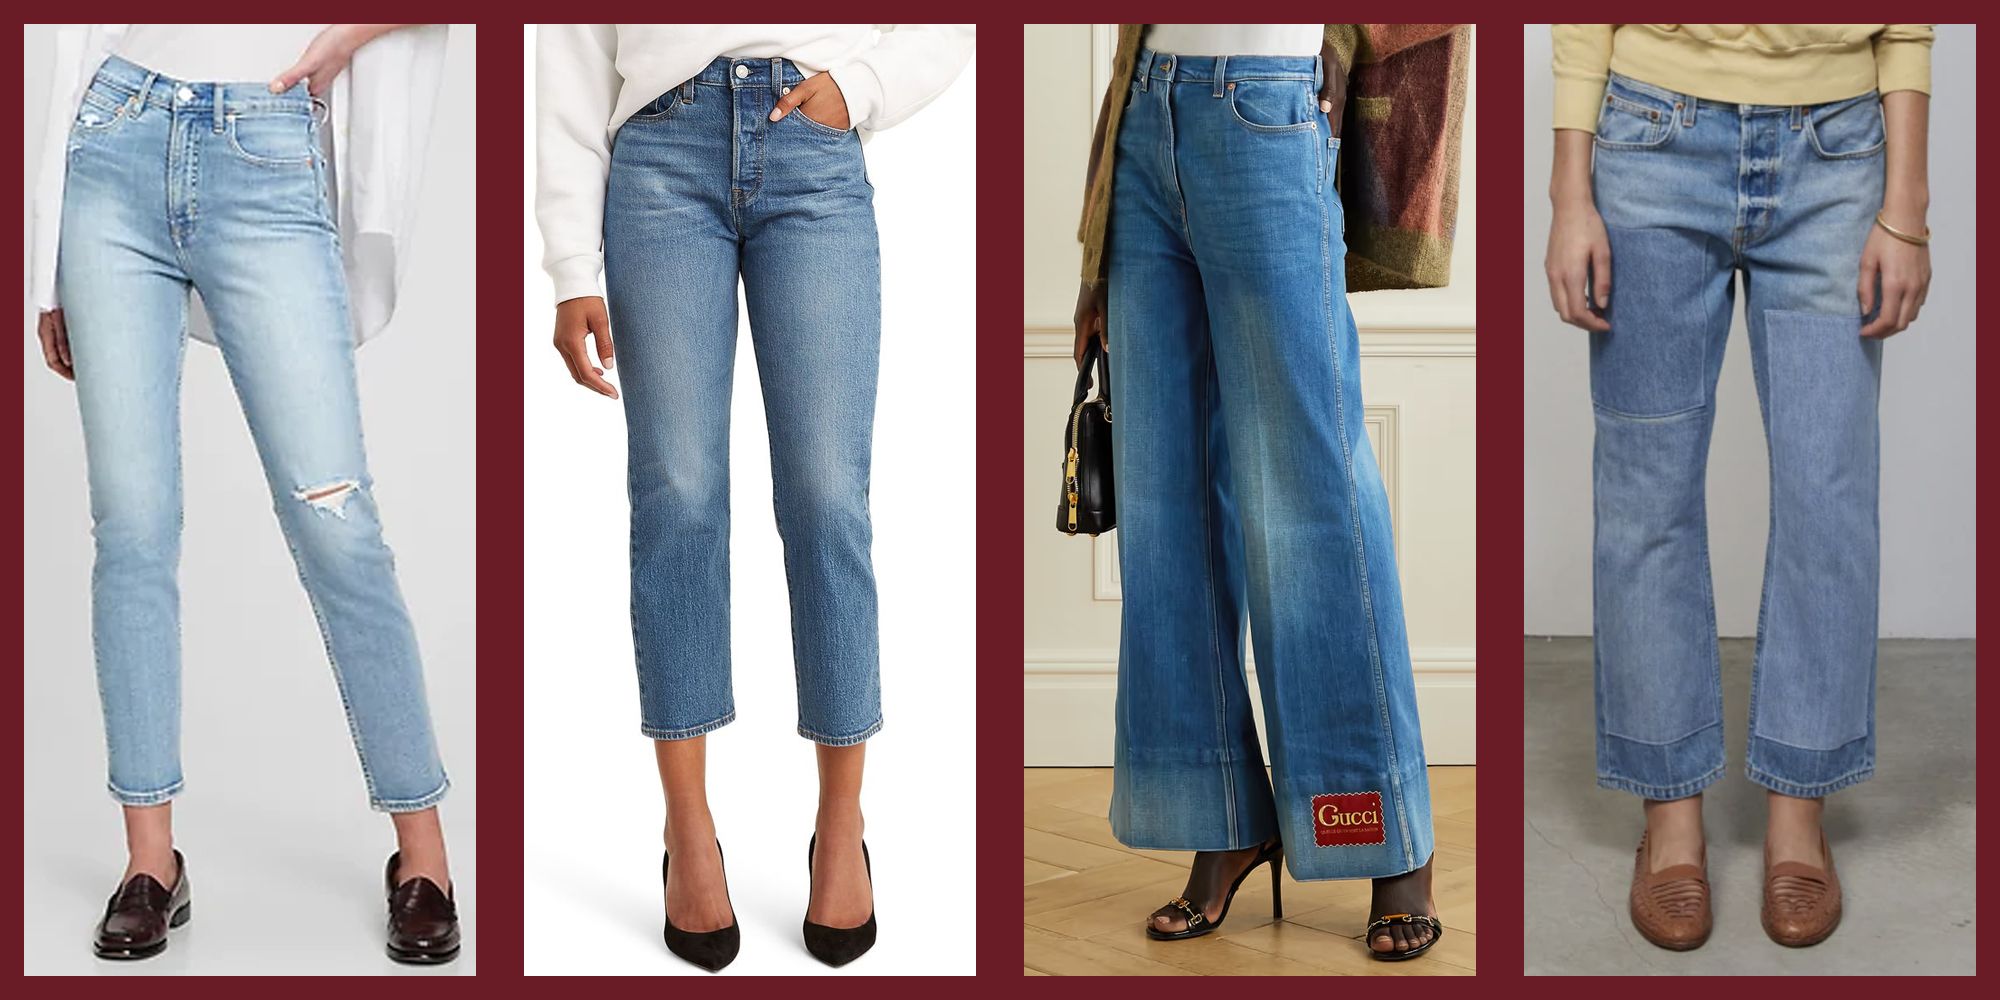 Jeans Women High Waist Elastic Thin Denim Long Pencil Pants Plus Size Women  Jeans Feminina Lady Fat Pants Soft (Colour: Blue, Size: 4XL) : Amazon.de:  Fashion